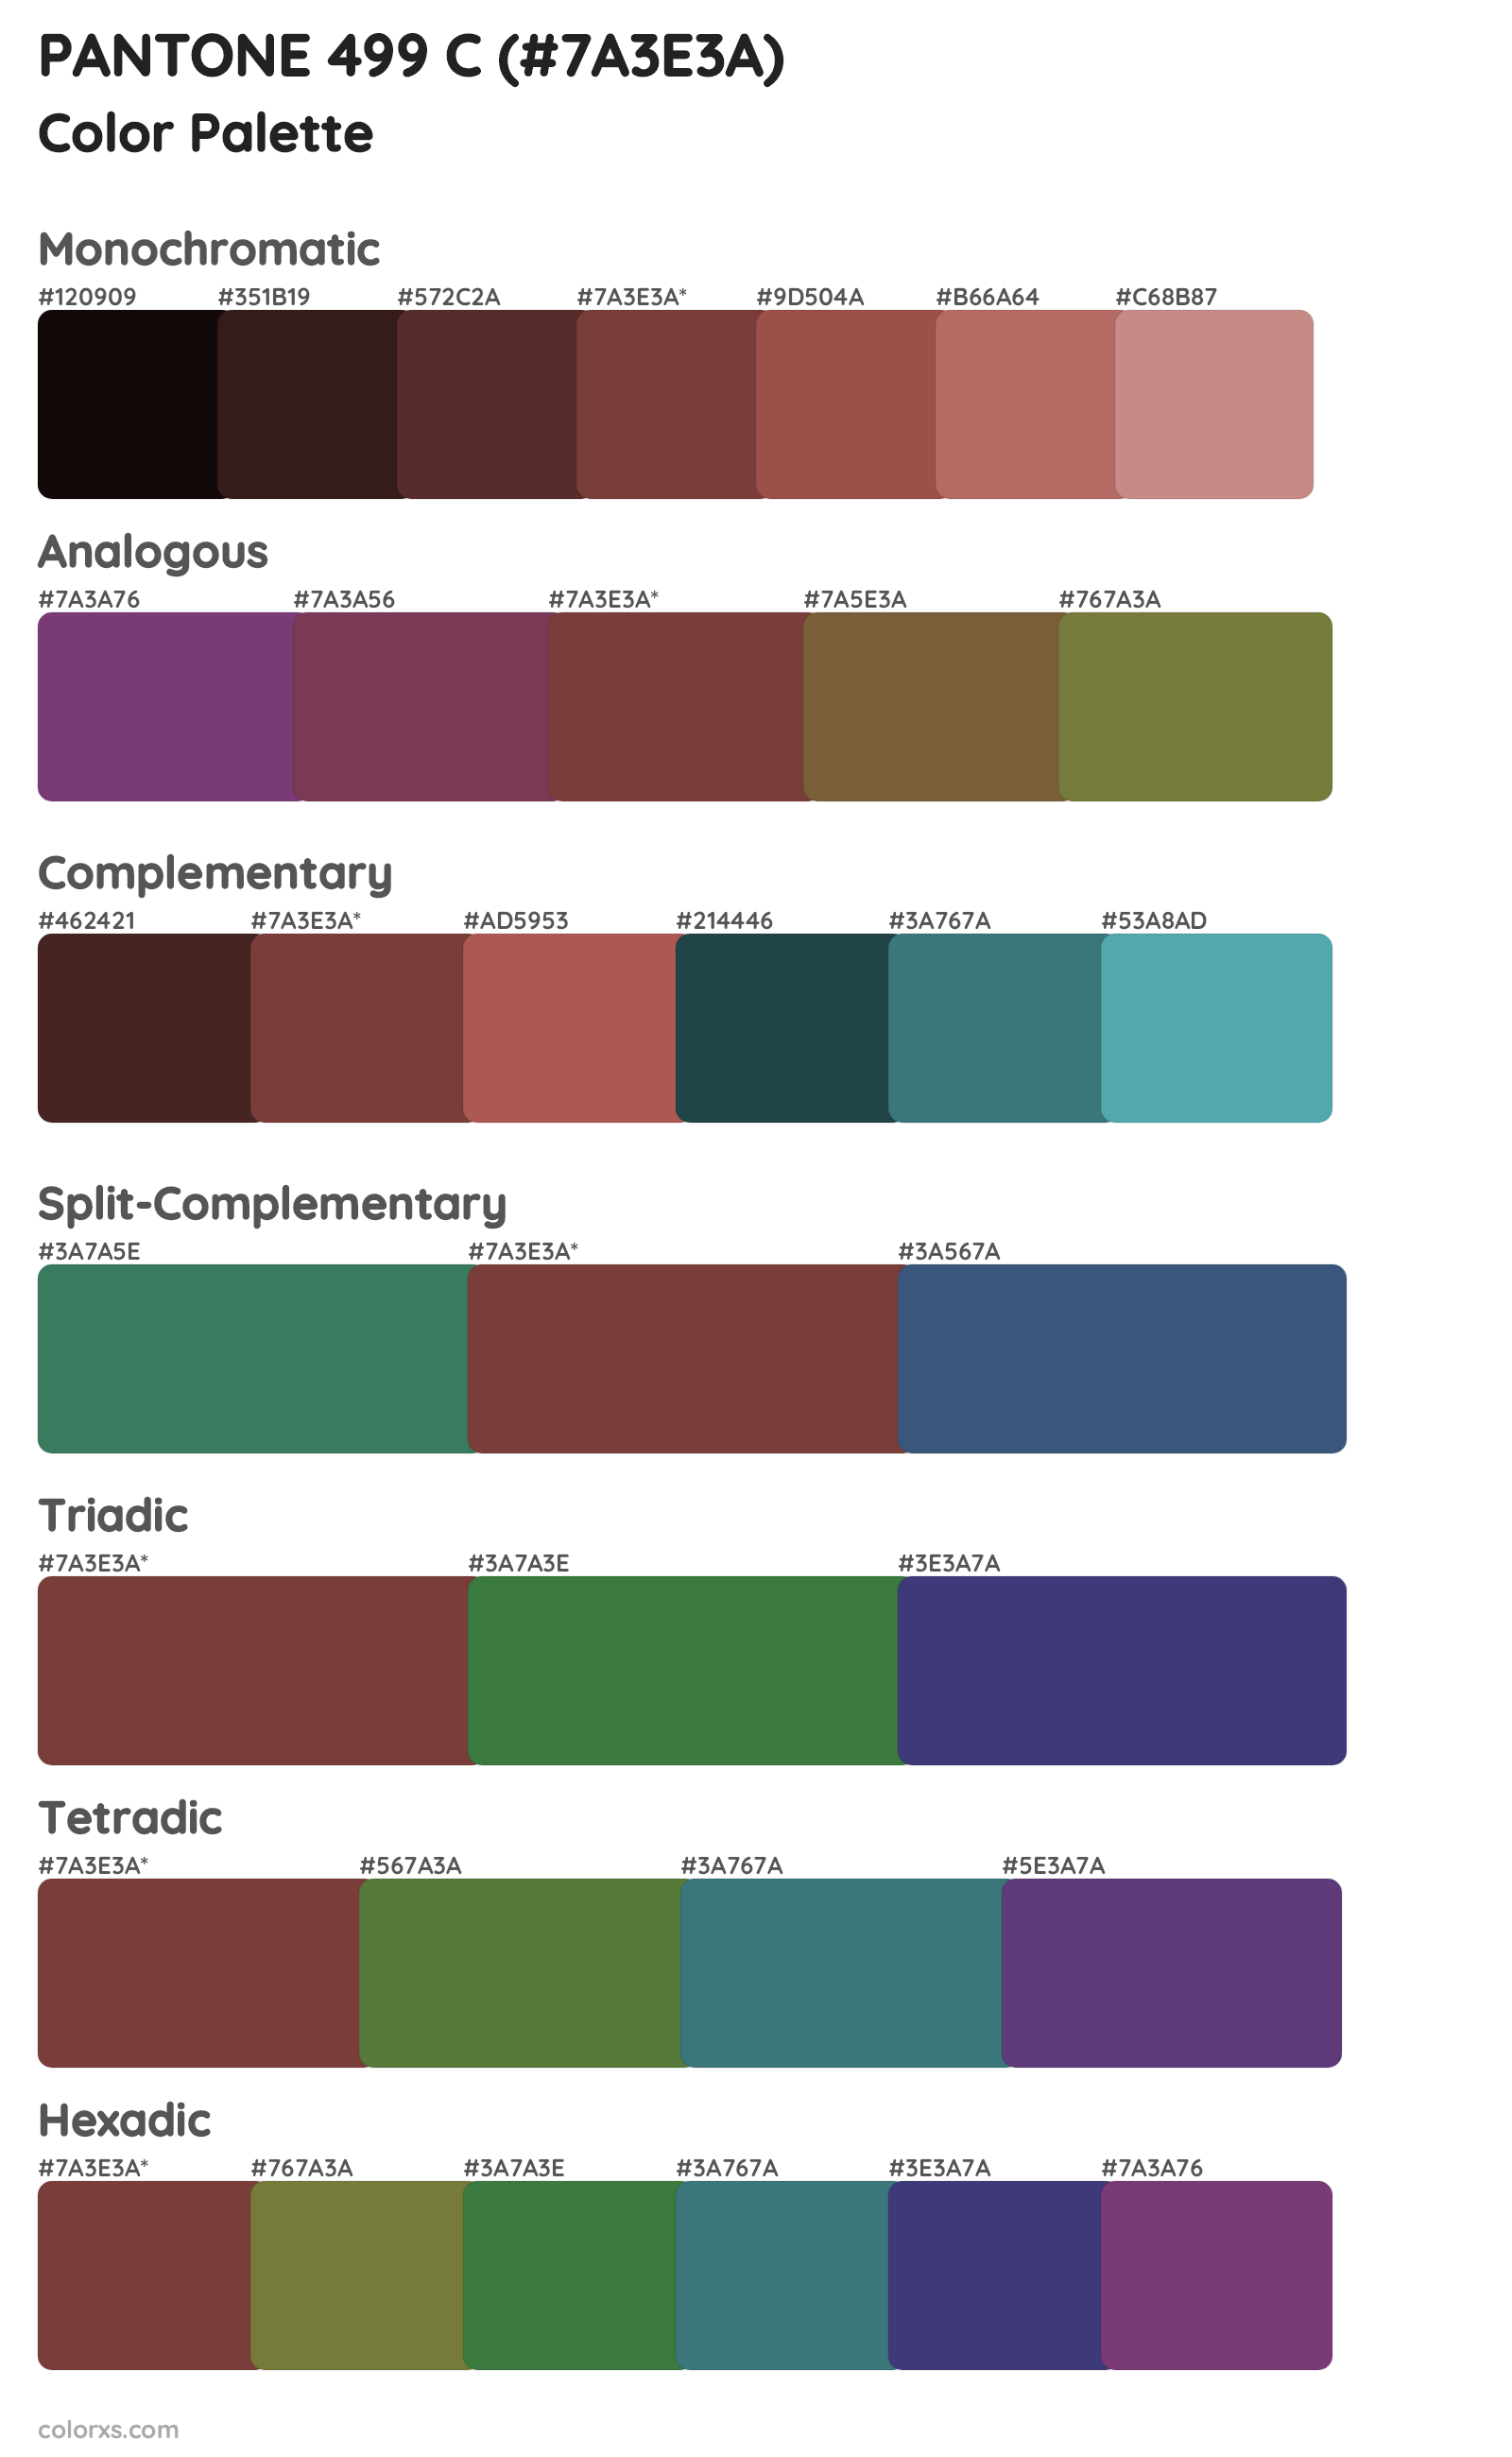 PANTONE 499 C Color Scheme Palettes